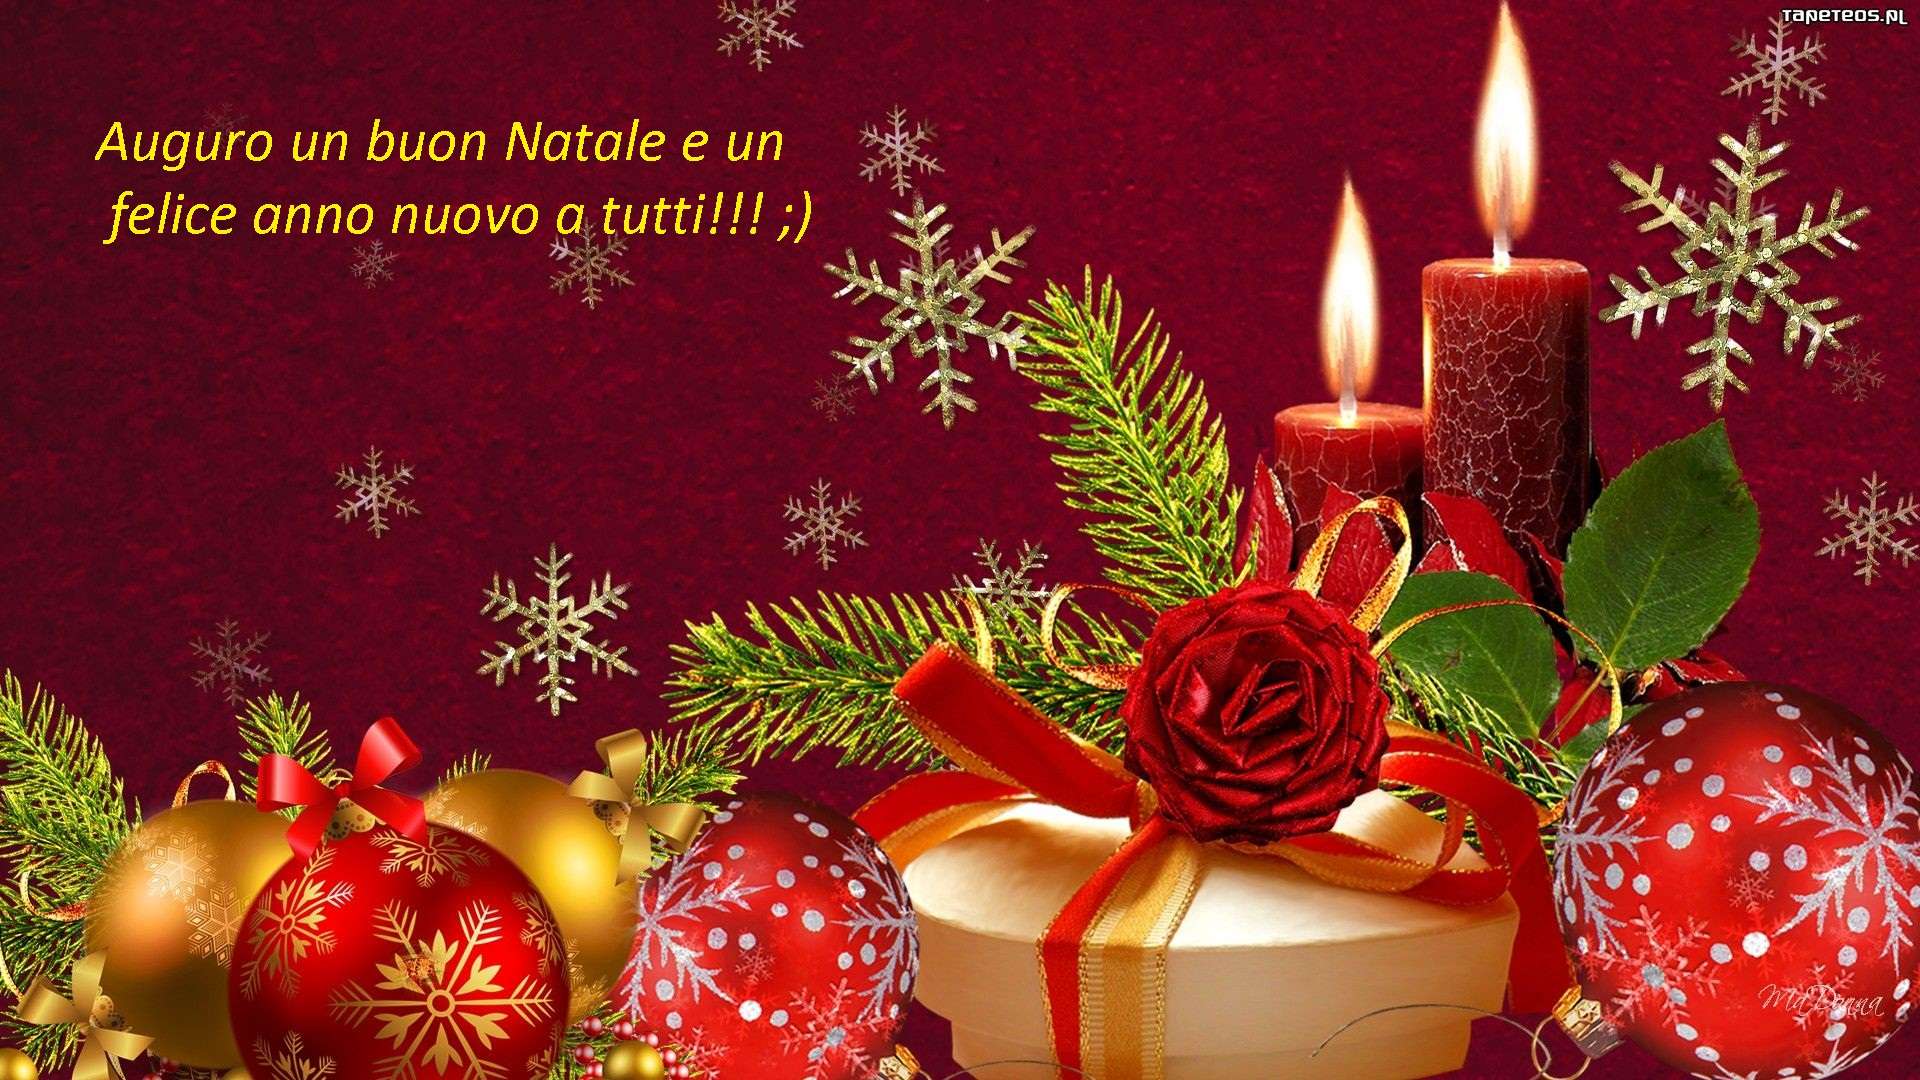 Messaggi Di Buon Natale E Felice Anno Nuovo.Auguri Di Buon Natale E Felice Anno Nuovo Baronerosso It Forum Modellismo